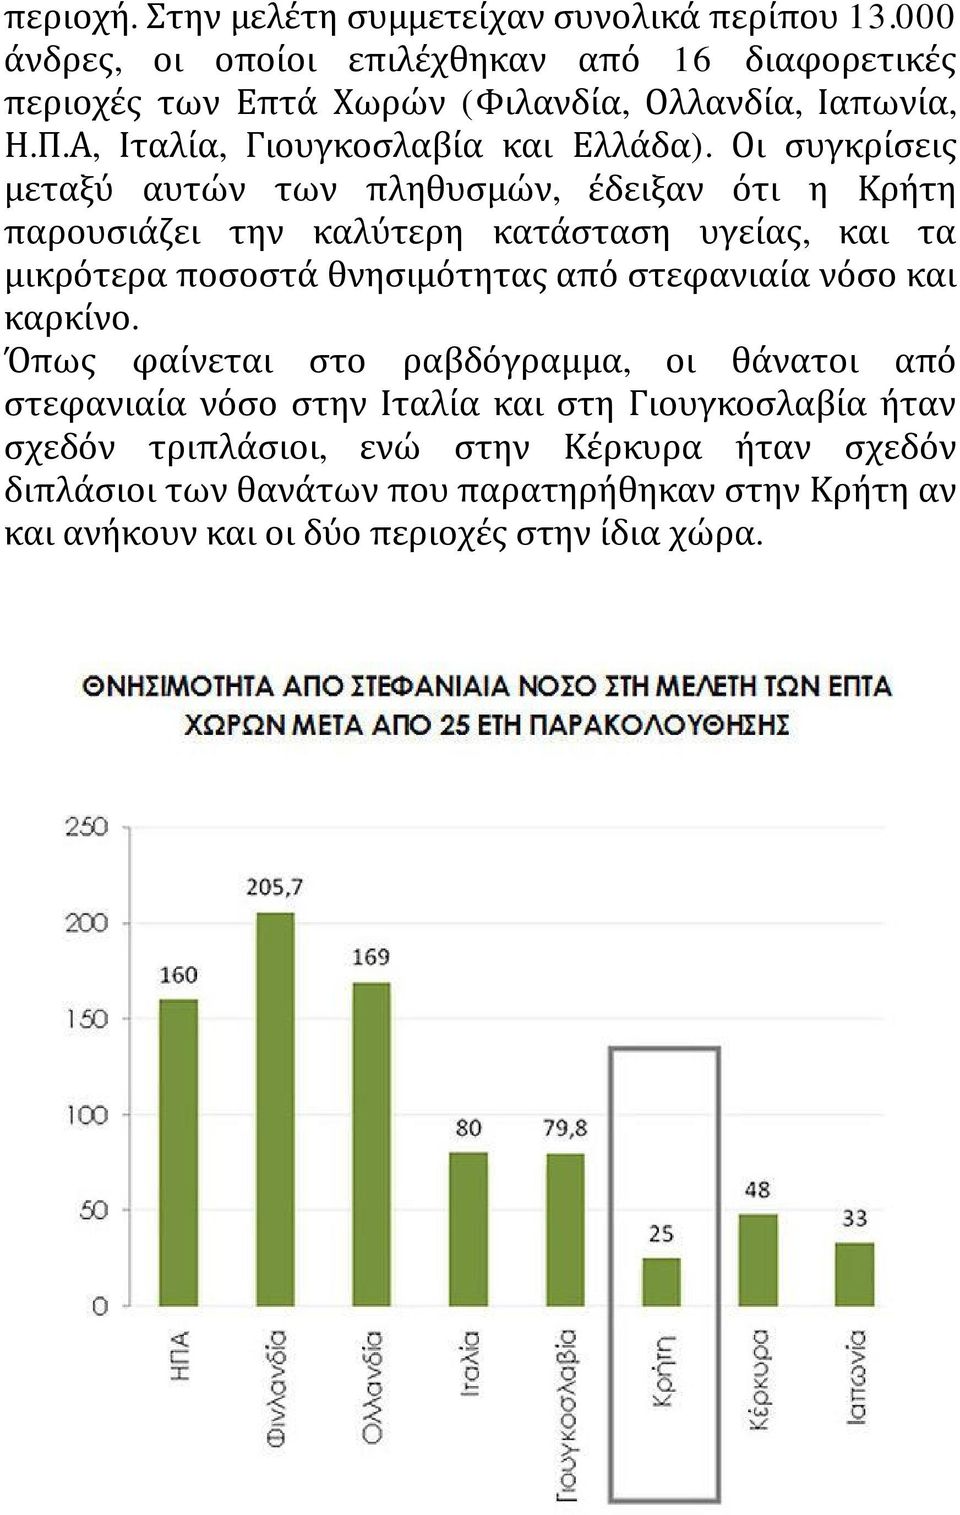 Οι συγκρίσεις μεταξύ αυτών των πληθυσμών, έδειξαν ότι η Κρήτη παρουσιάζει την καλύτερη κατάσταση υγείας, και τα μικρότερα ποσοστά θνησιμότητας από στεφανιαία